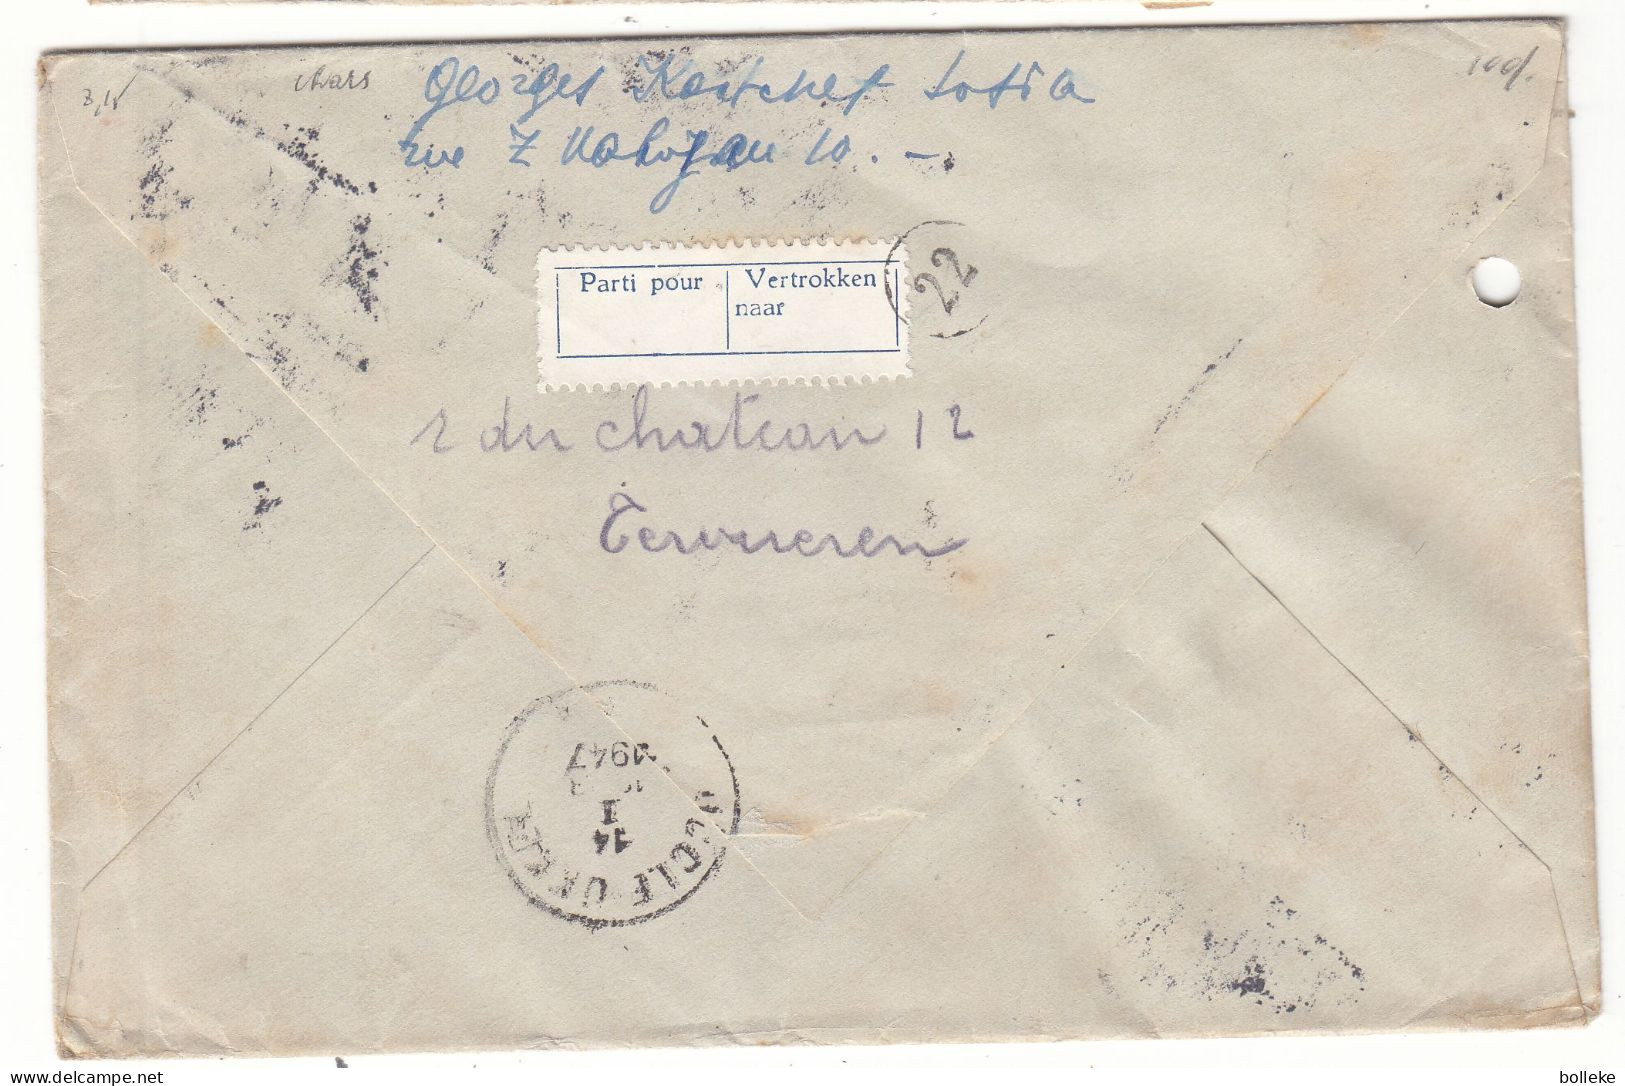 Bulgarie - Lettre Recom De 1947 - Oblit Sofia - Expédié Vers Bruxelles - Cachet De Uccle - Chars - - Covers & Documents